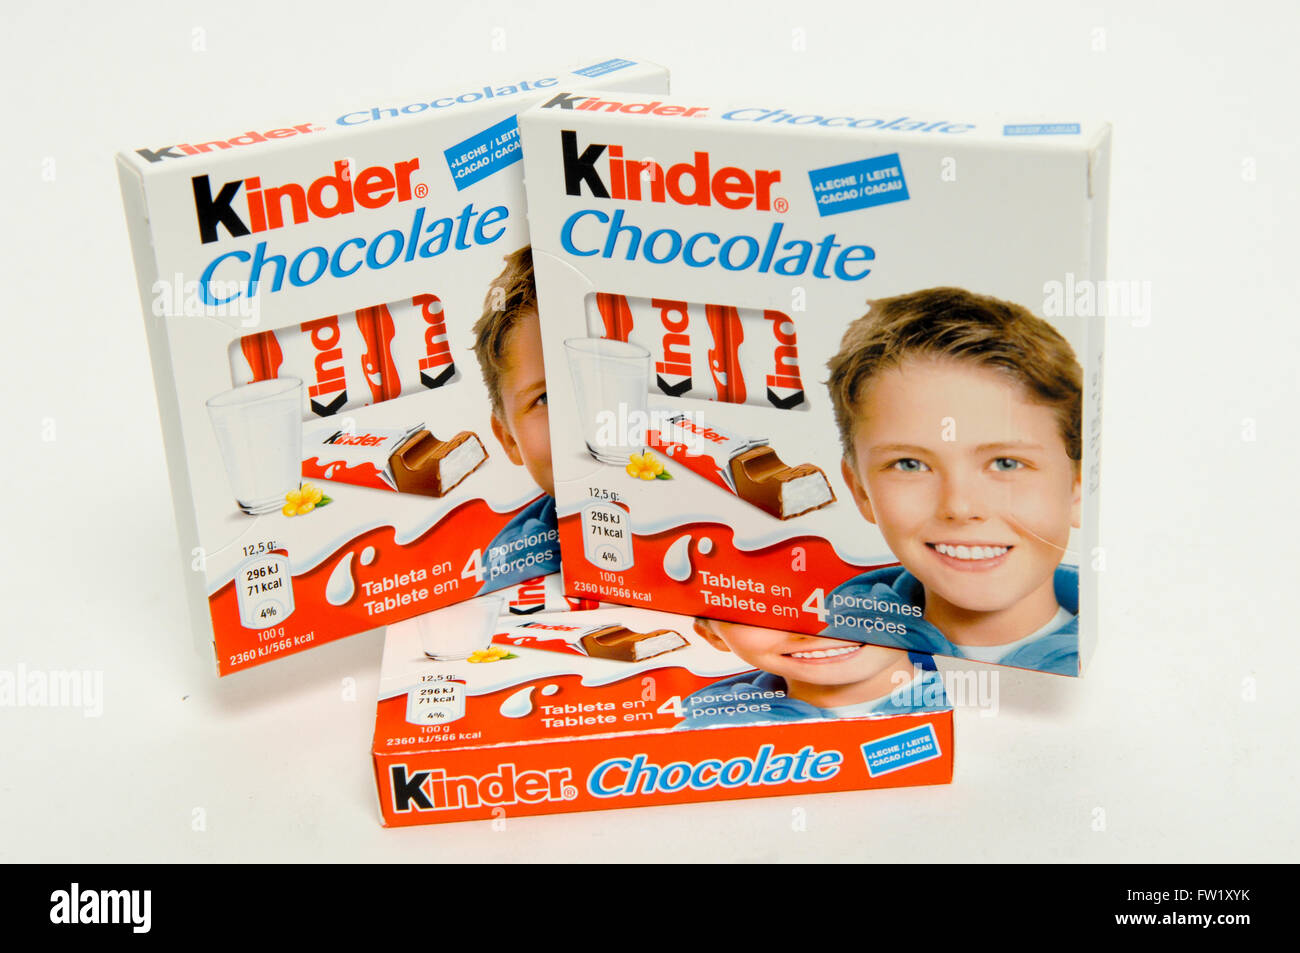 Kinder Bueno ist eine Duo-Reihe von Schokolade Wafer Takten mit einer Haselnusscreme Füllung Marke Produktlinie von Ferrero. Stockfoto